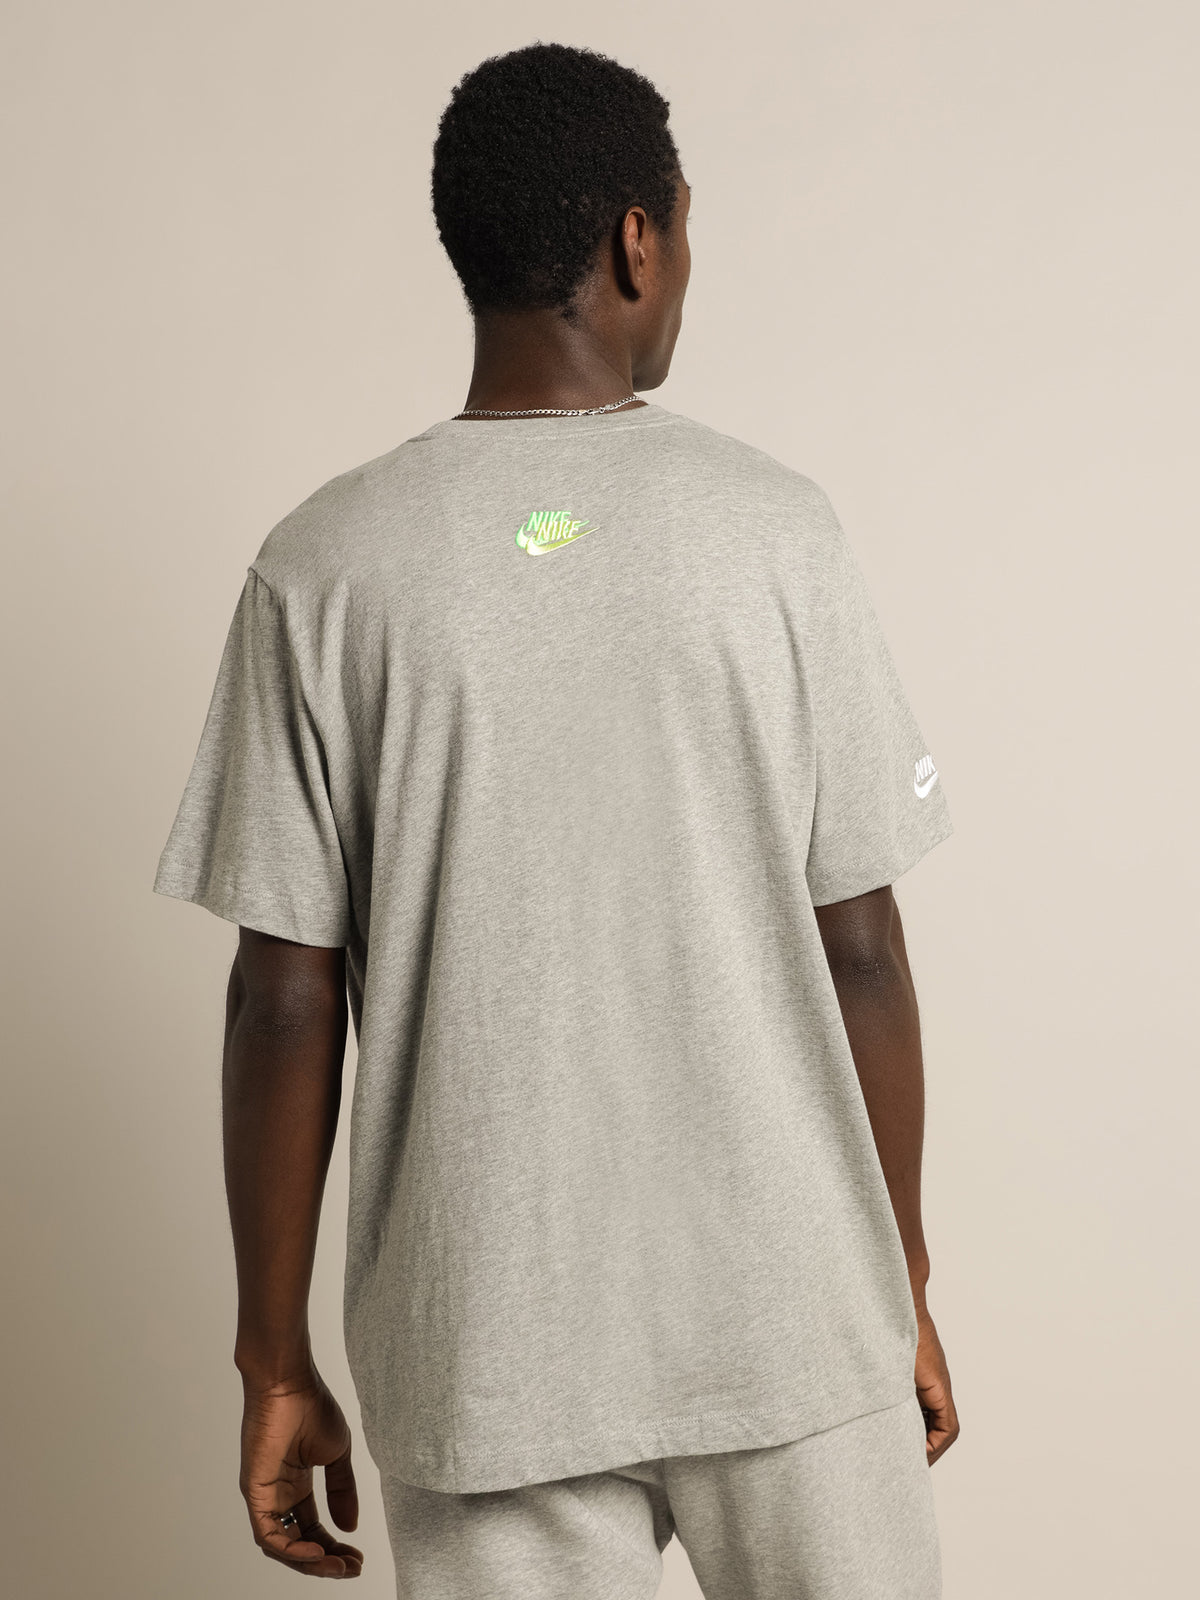 NSW Club Essential T-Shirt in Grey Heather